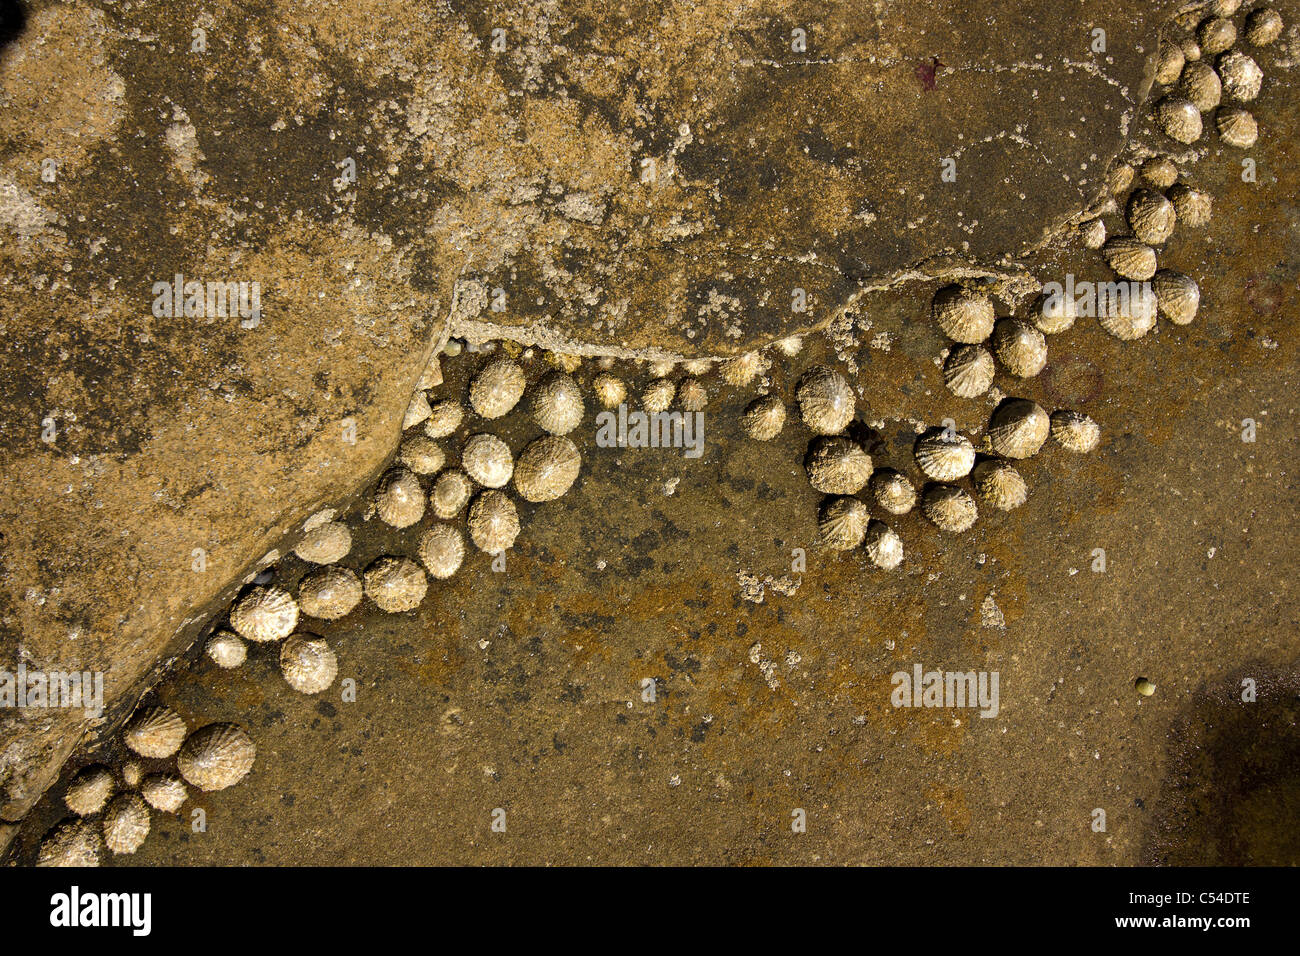 Napfschnecken (Patella Vulgata) auf braunen Felsen Stockfoto